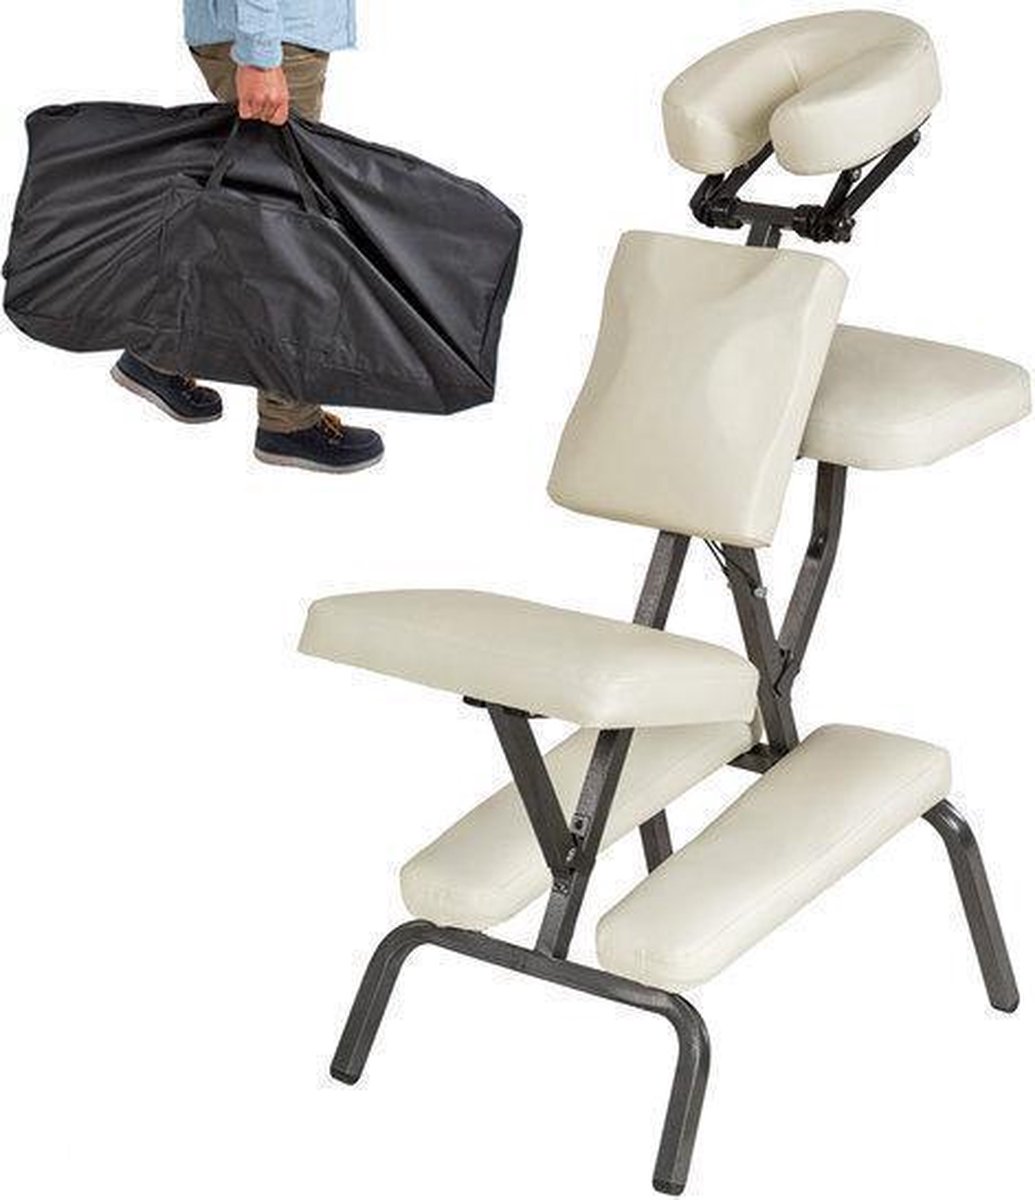 Massagestoel, behandelstoel met dikke bekleding beige inclusief zwarte draagtas